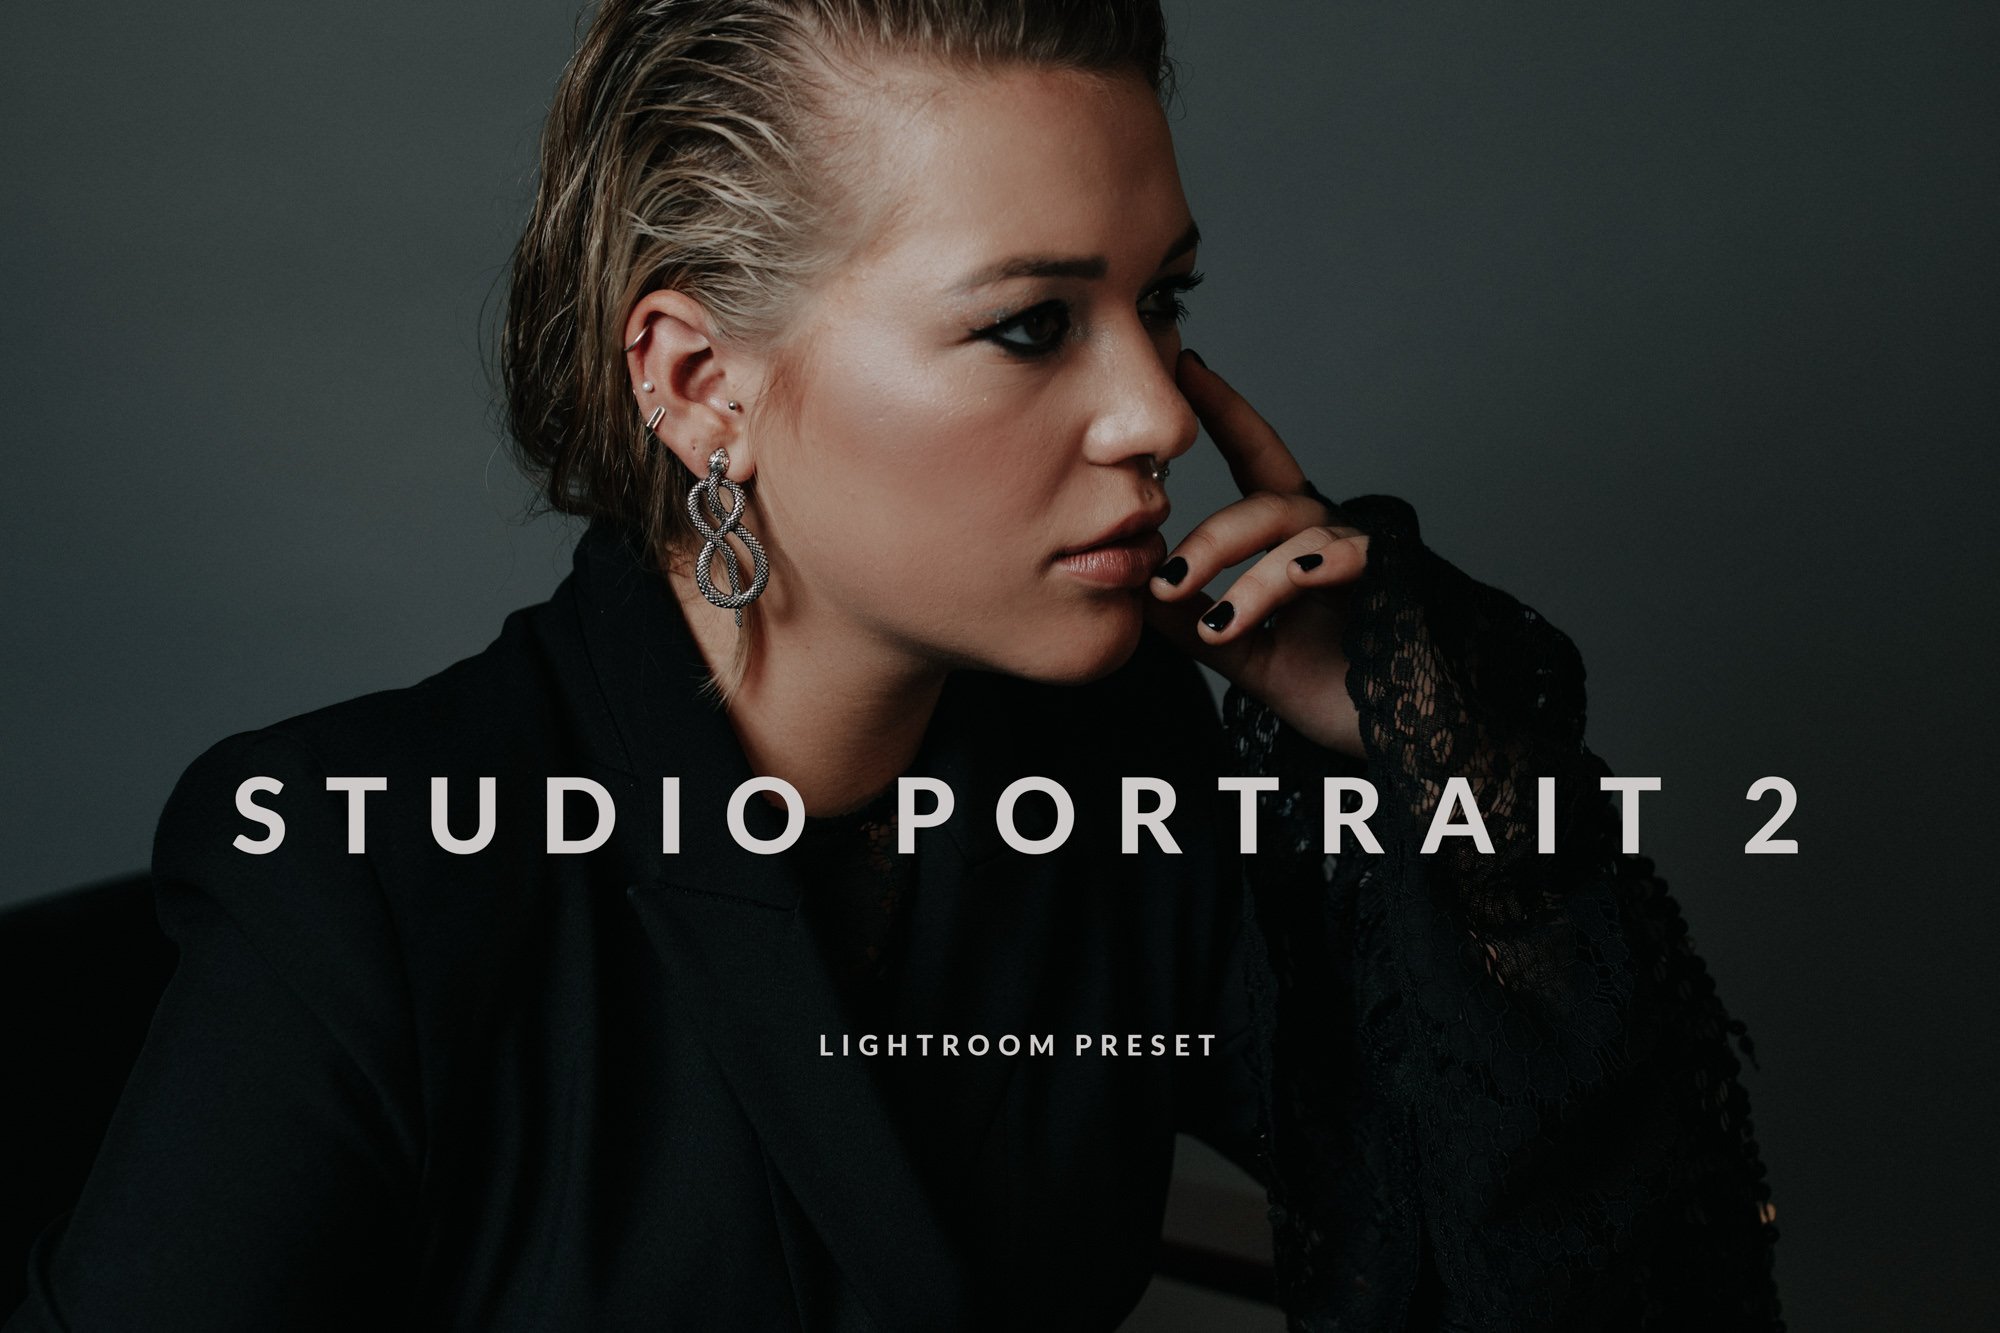 Studio Portrait 2 / Moodycover image.